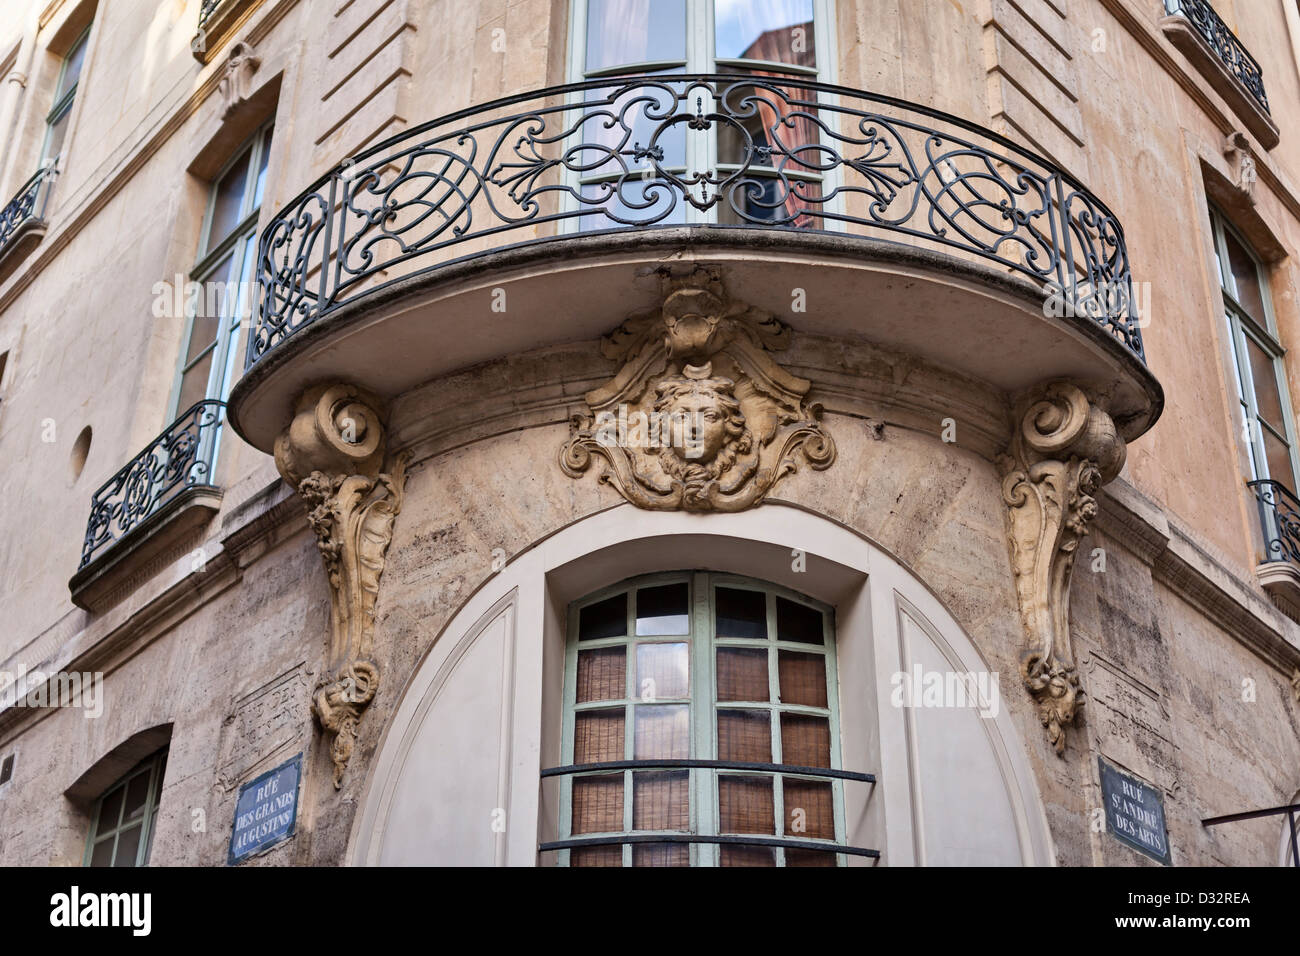 Reich verzierte Balkon an der Kreuzung der Rue des Grands-Augustins und Rue Saint-André des Arts, Paris, Frankreich Stockfoto